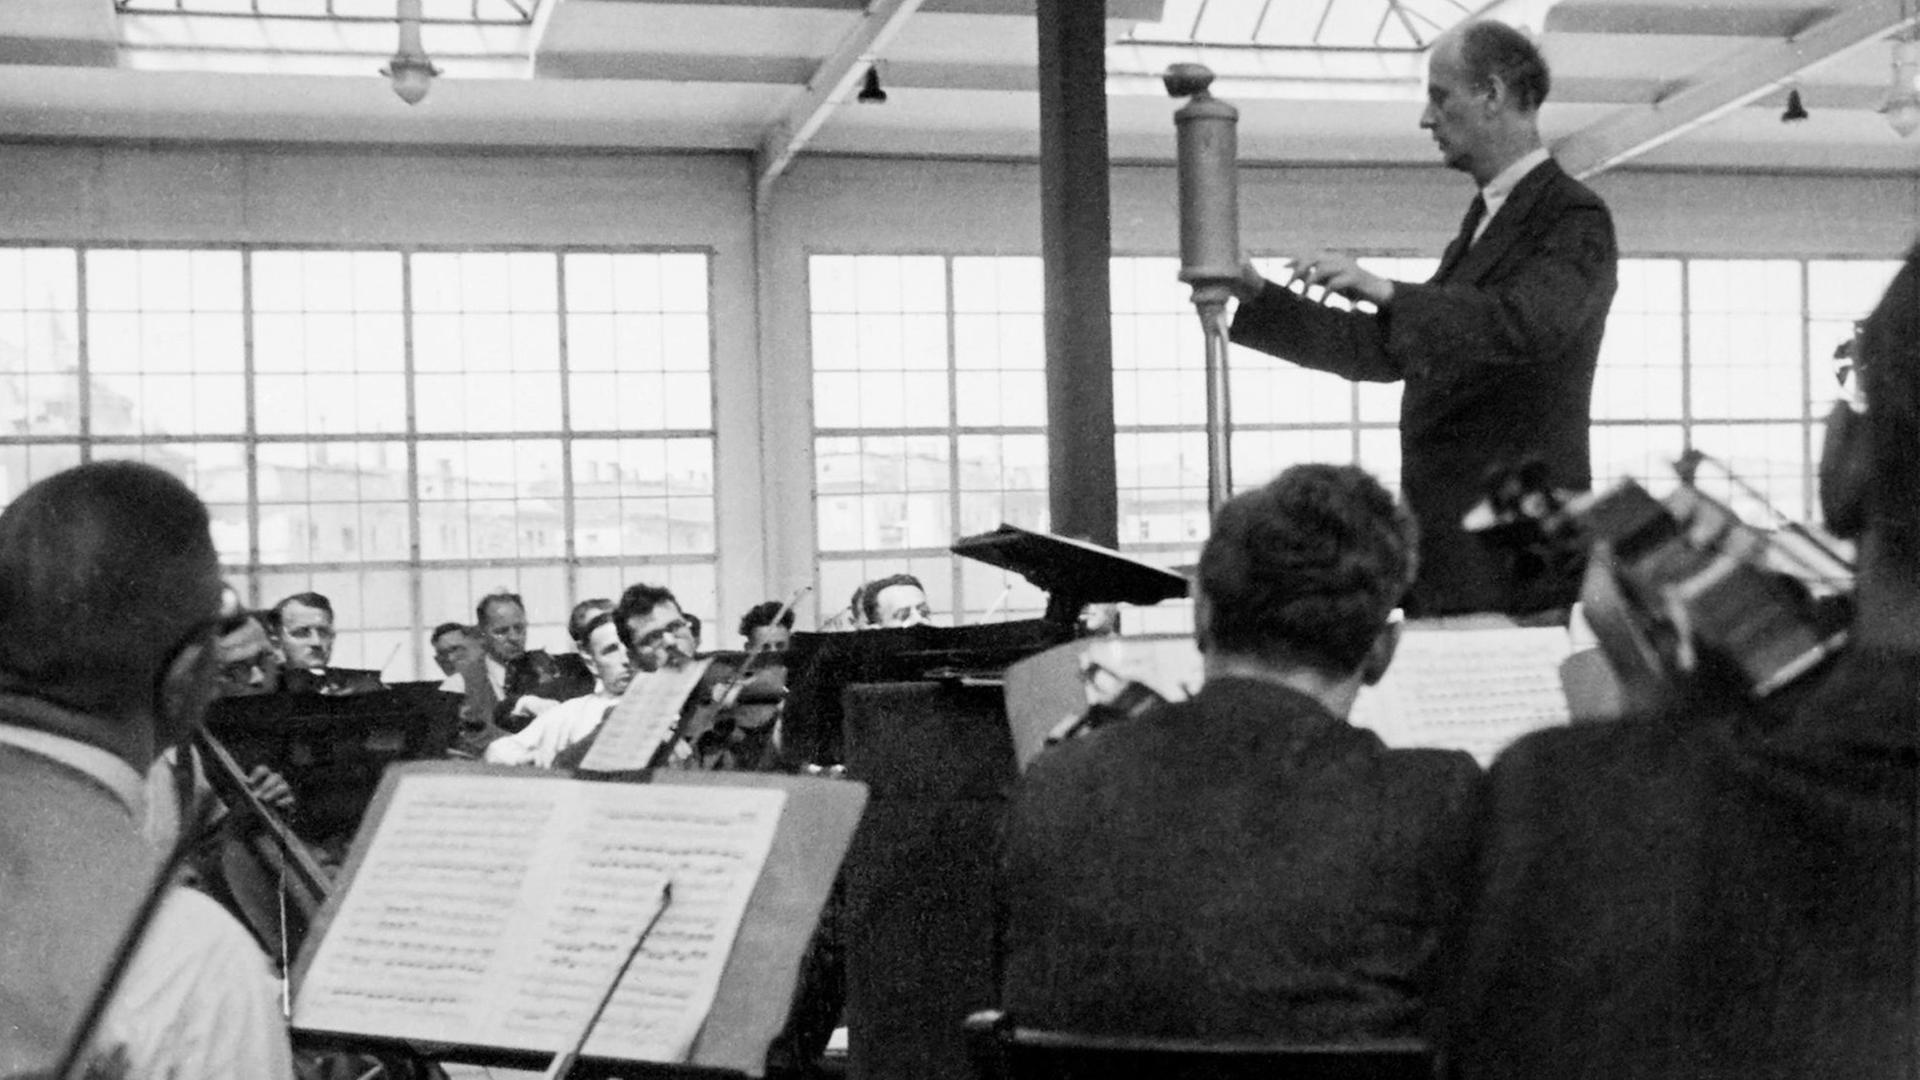 Schwarz-Weiß-Fotografie eines Menschen im Frack, der ein Orchester dirigiert. In der Mitte des Raums steht ein Mikrofon.